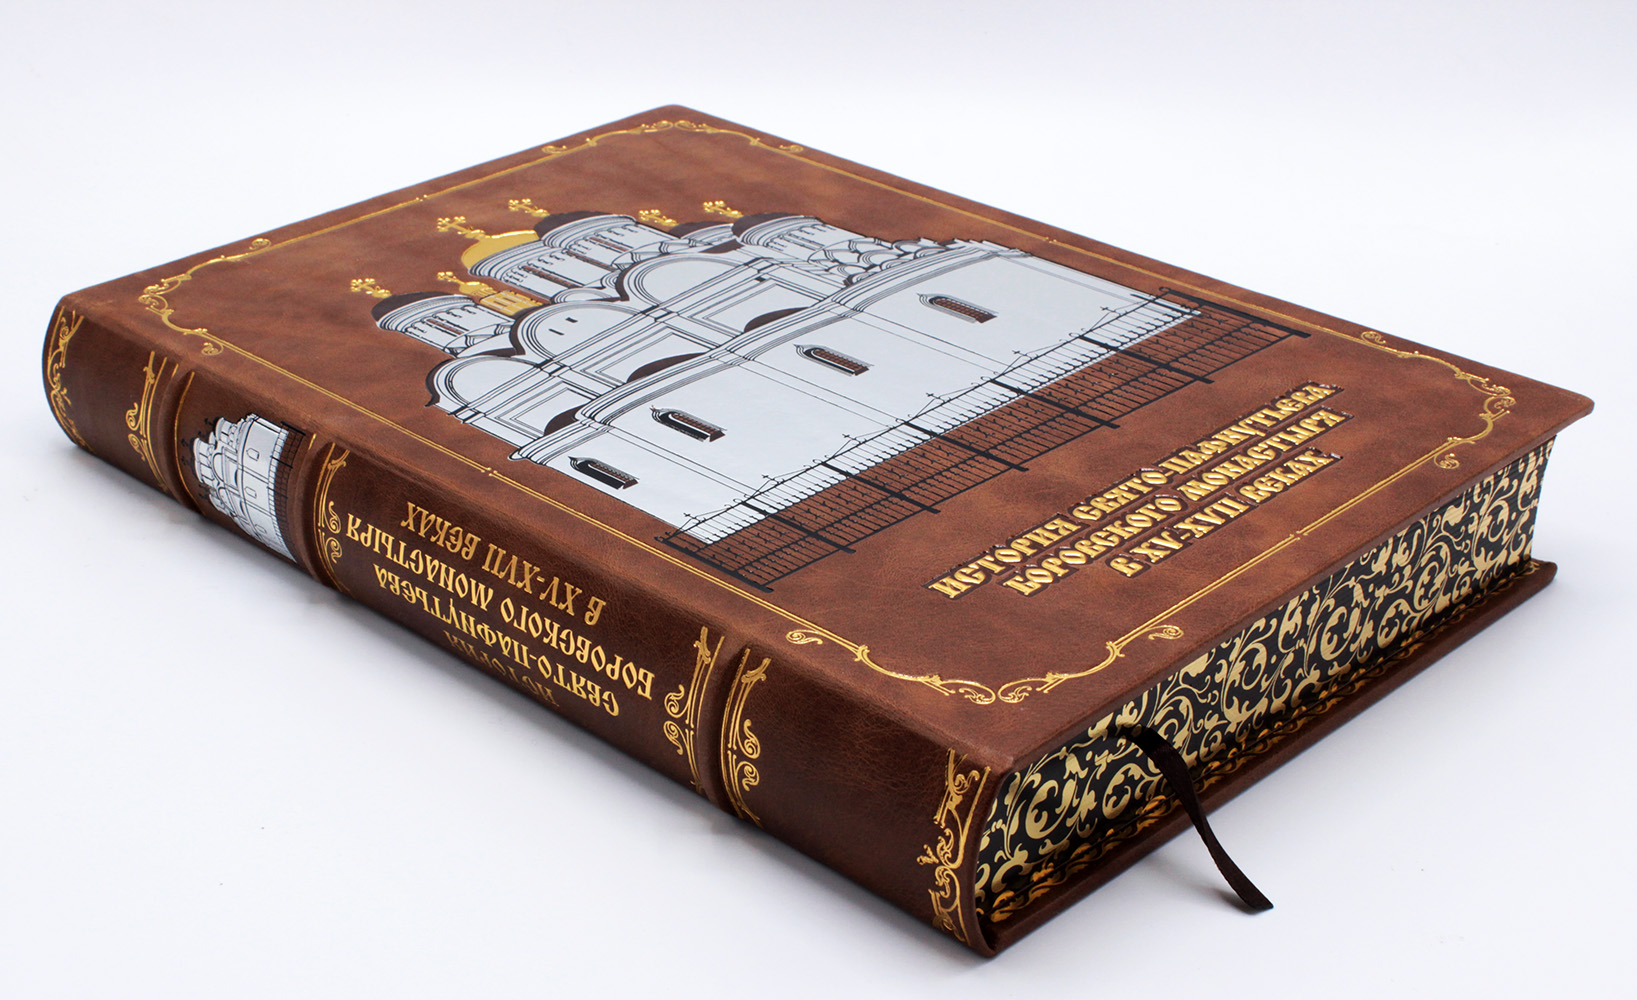 История Свято-Пафнутьева Боровского монастыря подарочная книга